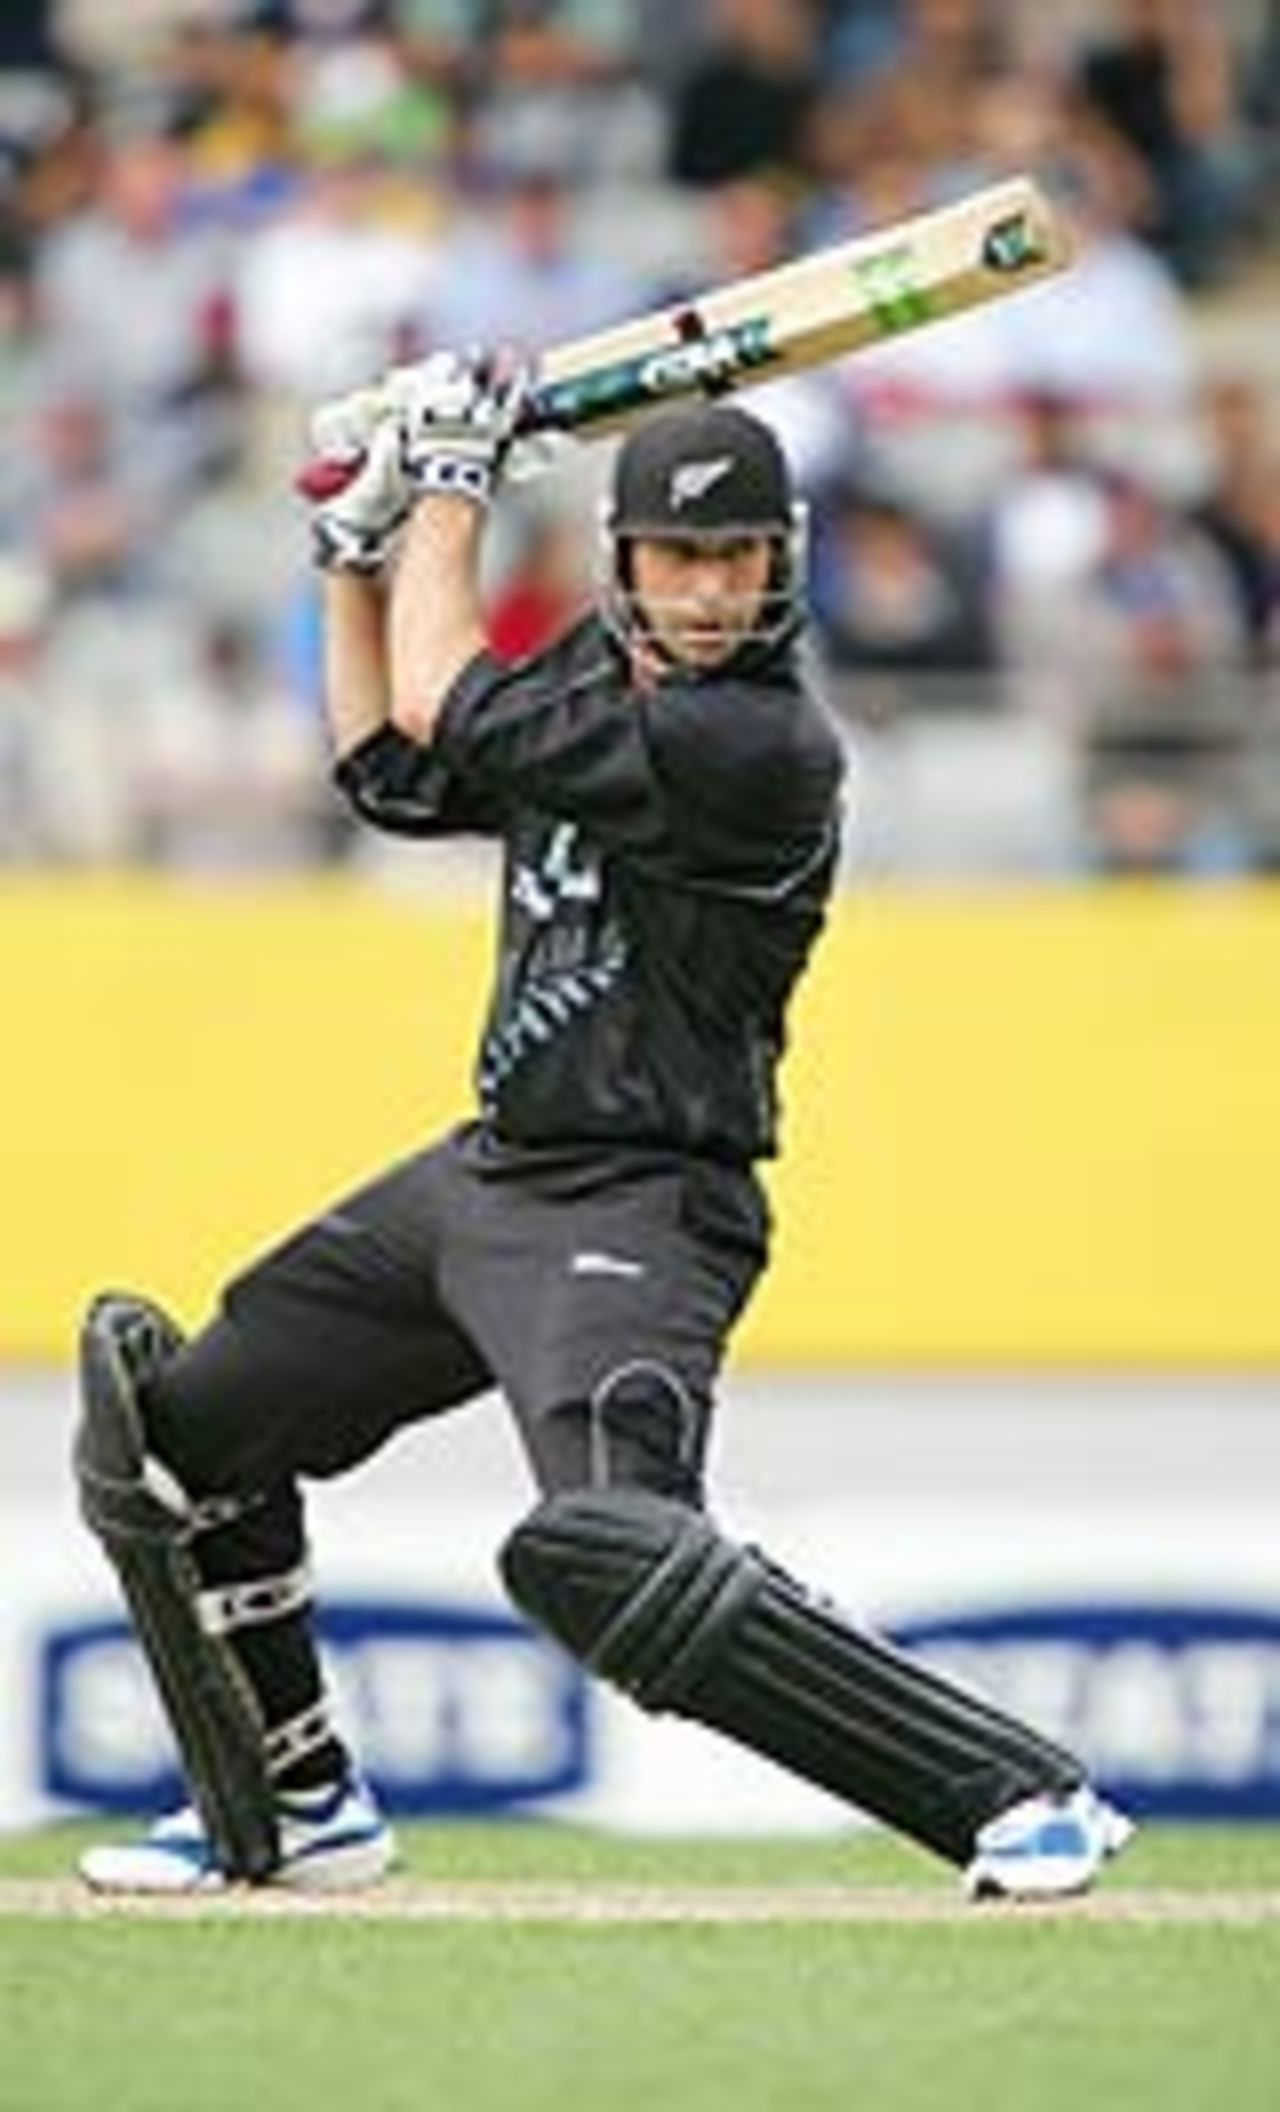 Stephen Fleming drives, New Zealand v Sri Lanka, 1st ODI, Auckland, December 26, 2004